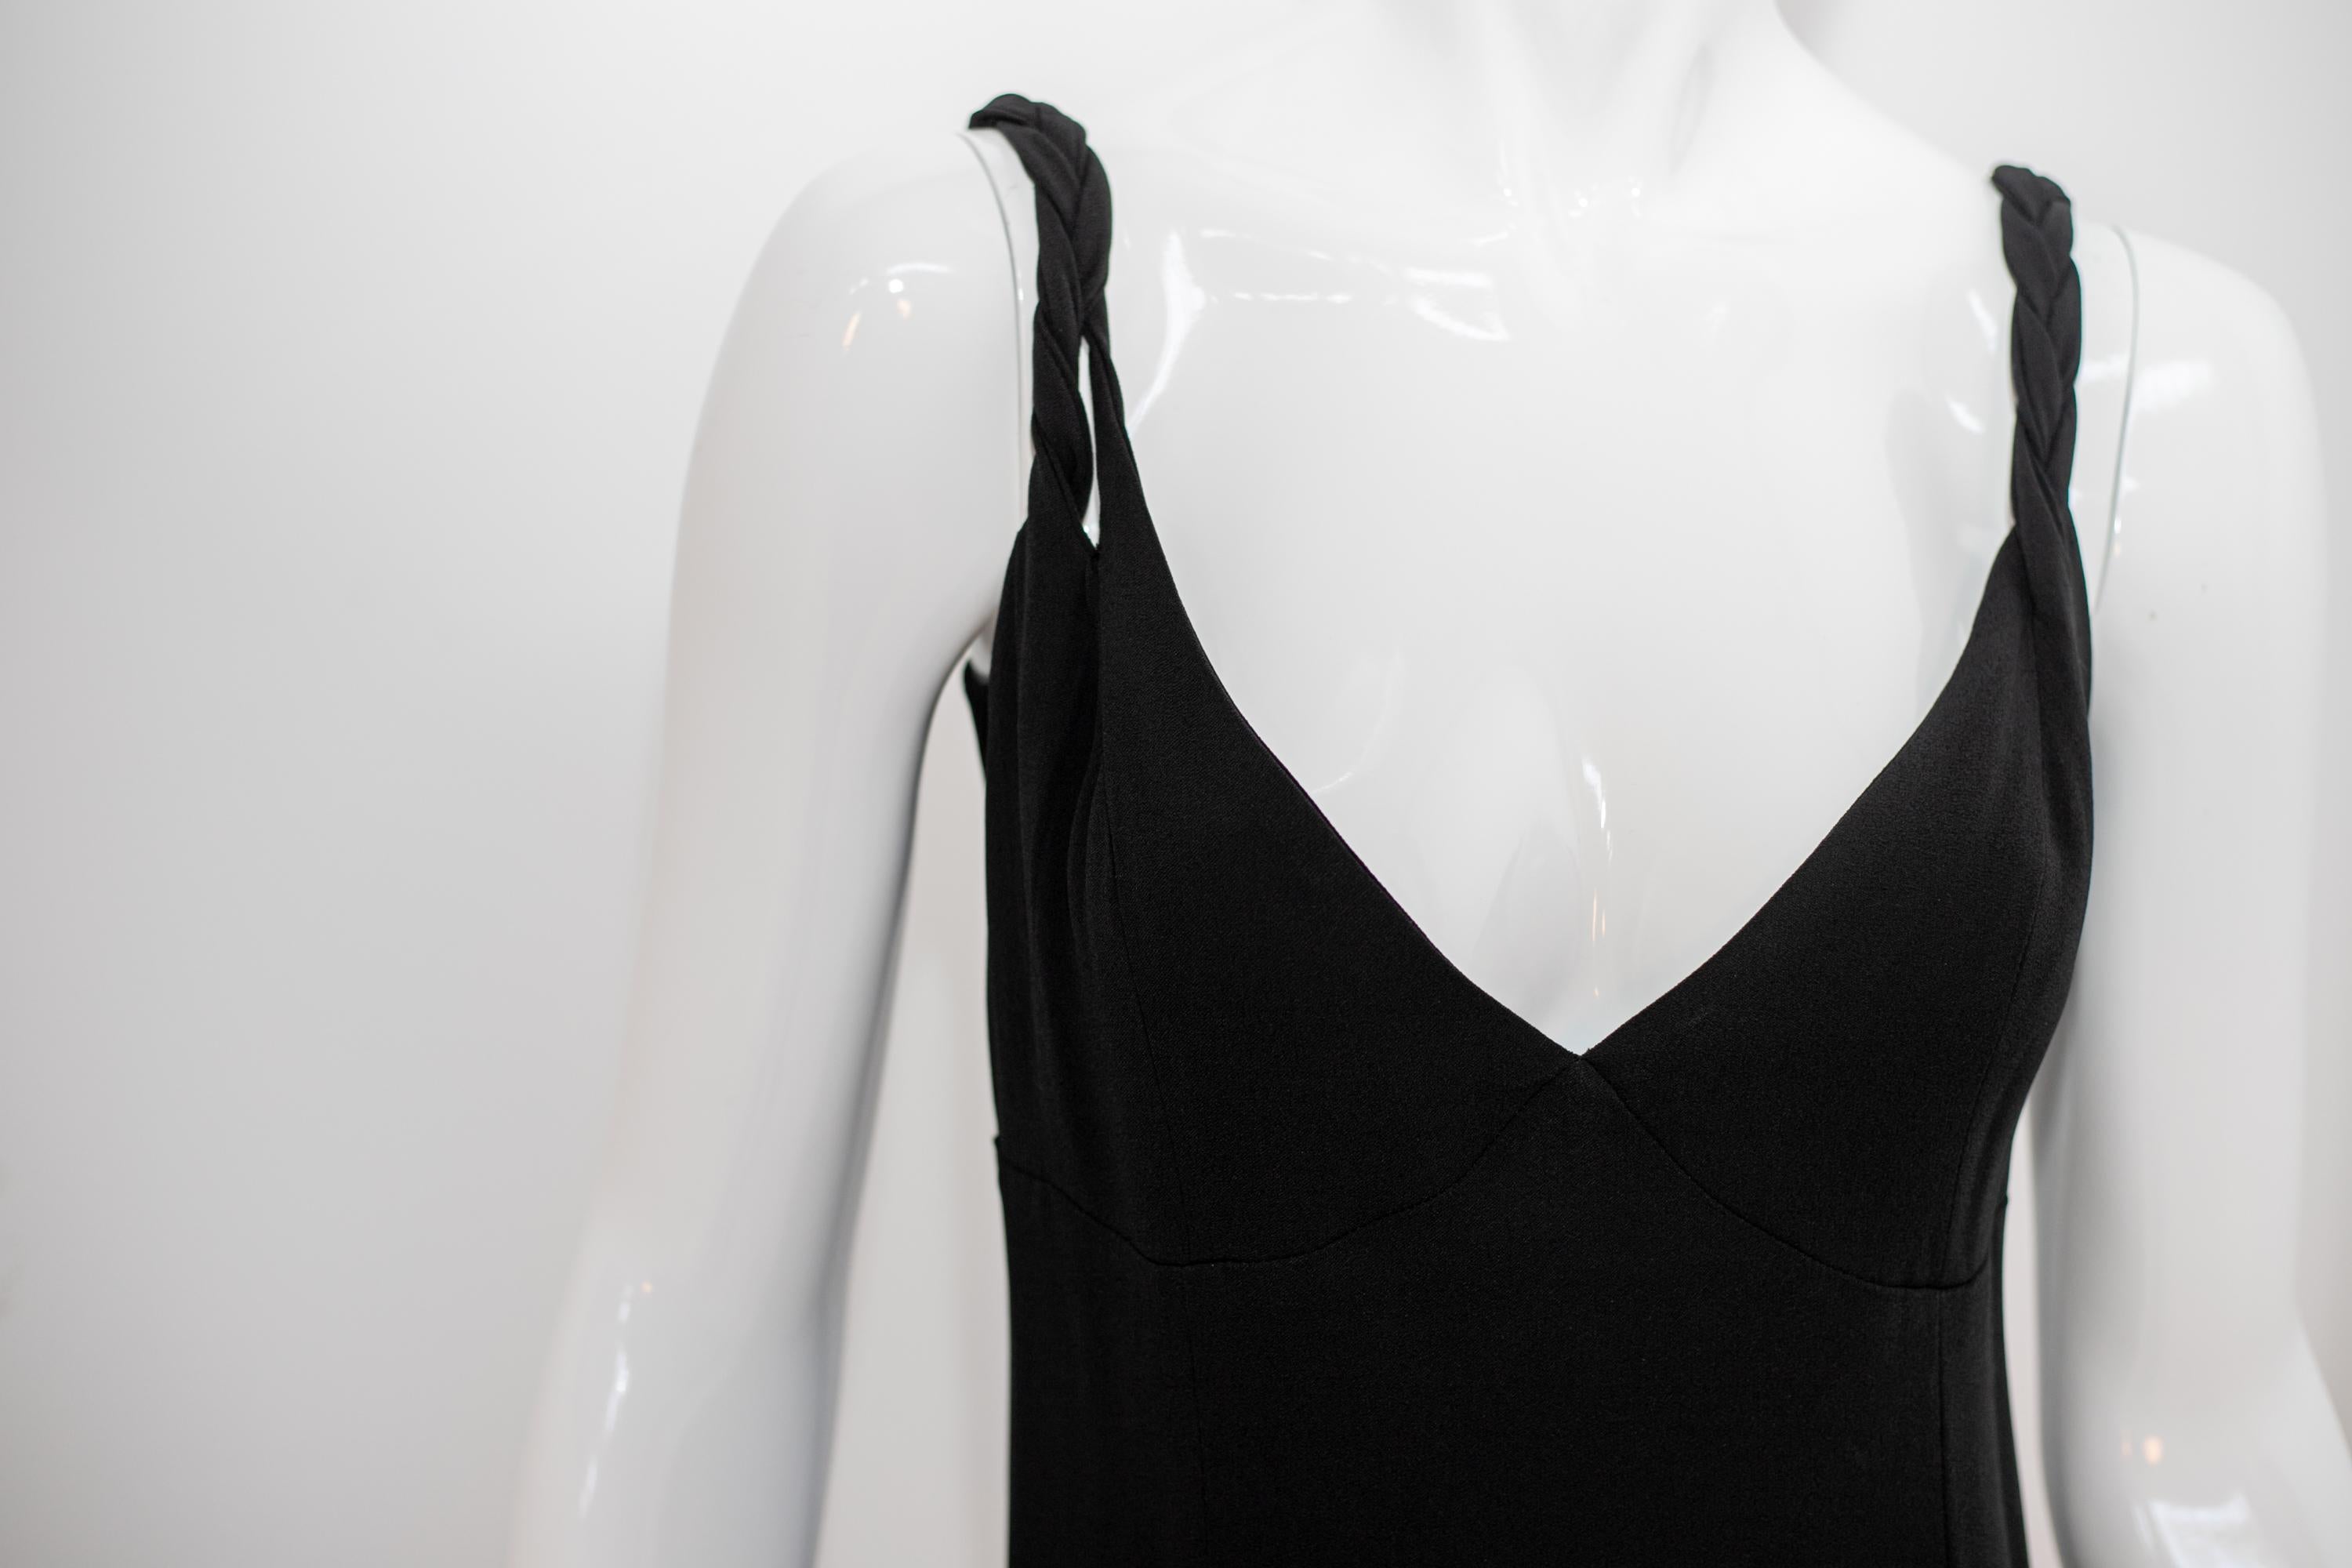 Magnifique robe noire d'Effimero des années 1990, fabriquée en Italie.
La robe est entièrement réalisée en coton noir, avec des bretelles tissées. L'encolure est en V profond, très sensuelle.
La robe descend très doucement jusqu'aux chevilles. La